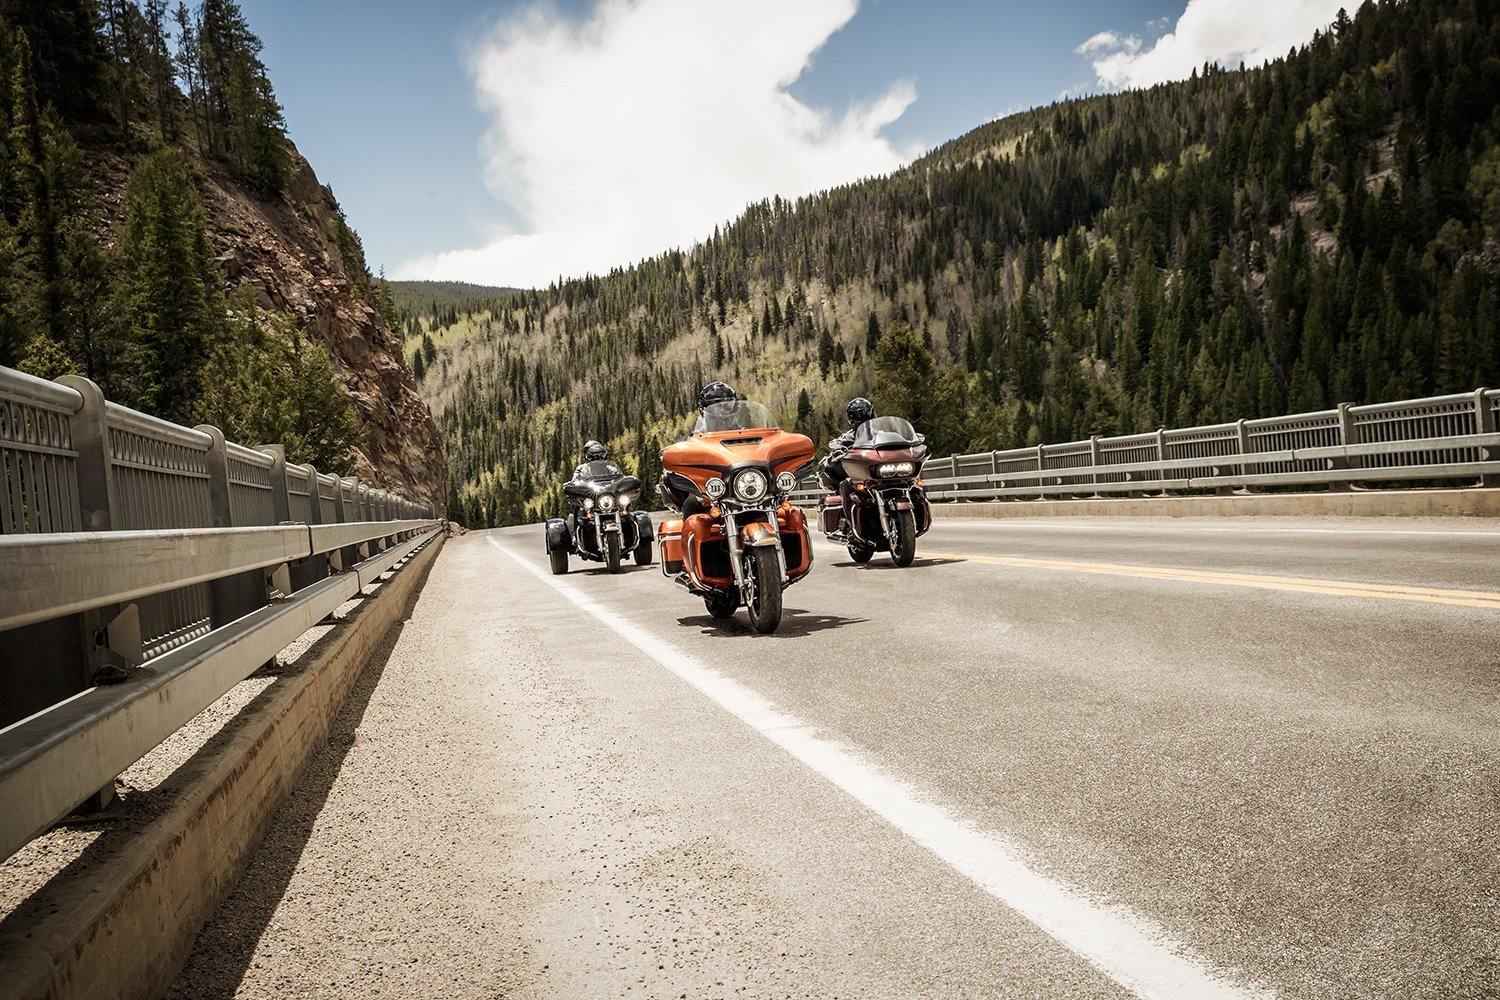 2019 Harley-Davidson models released - Rolling Thunder Harley-Davidson